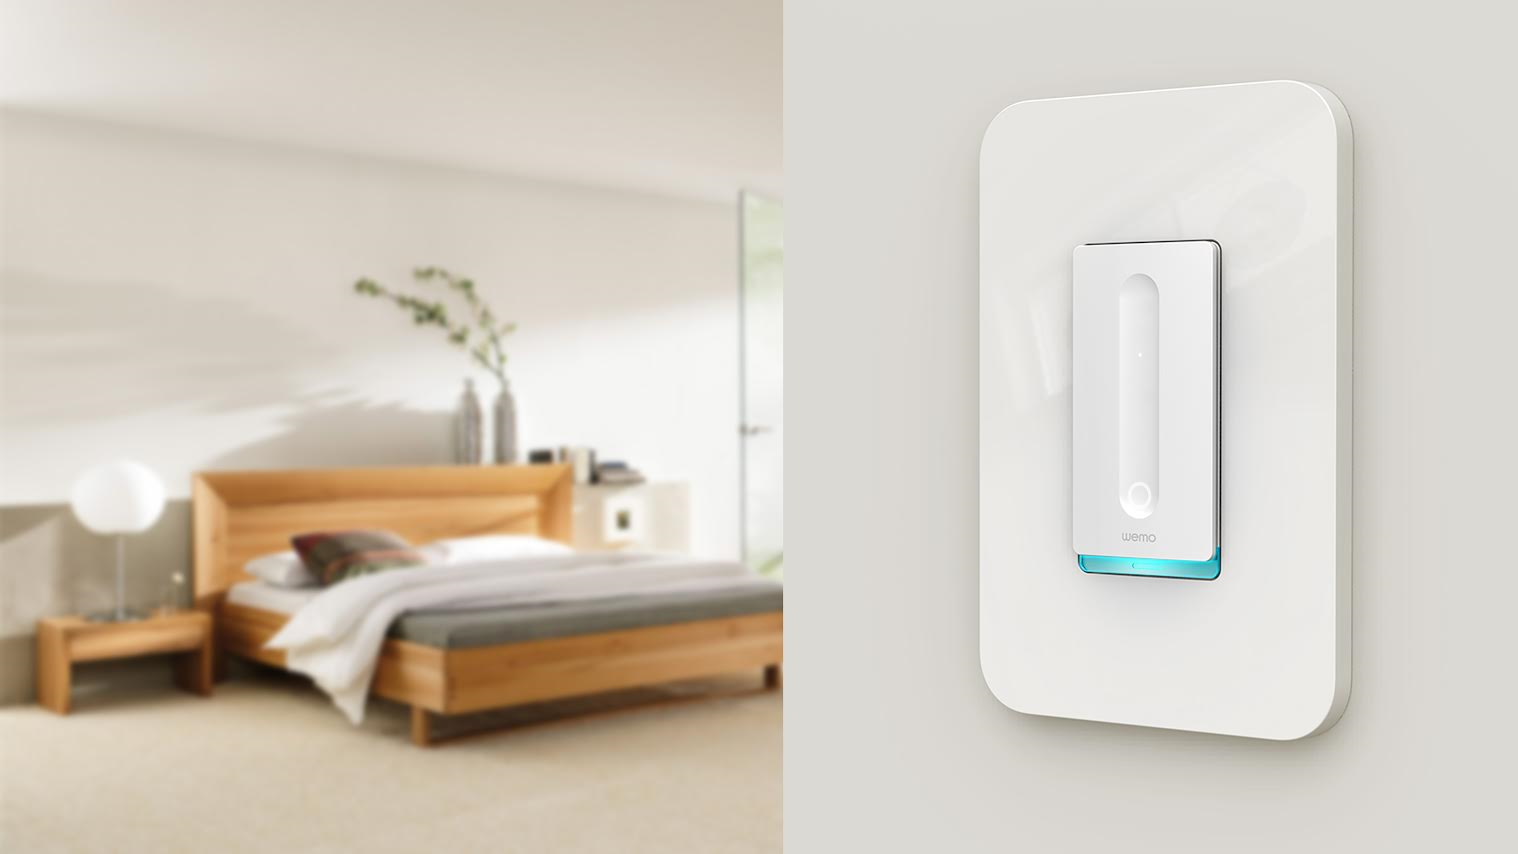 WeMo Smart Dimmer Switch in bedroom